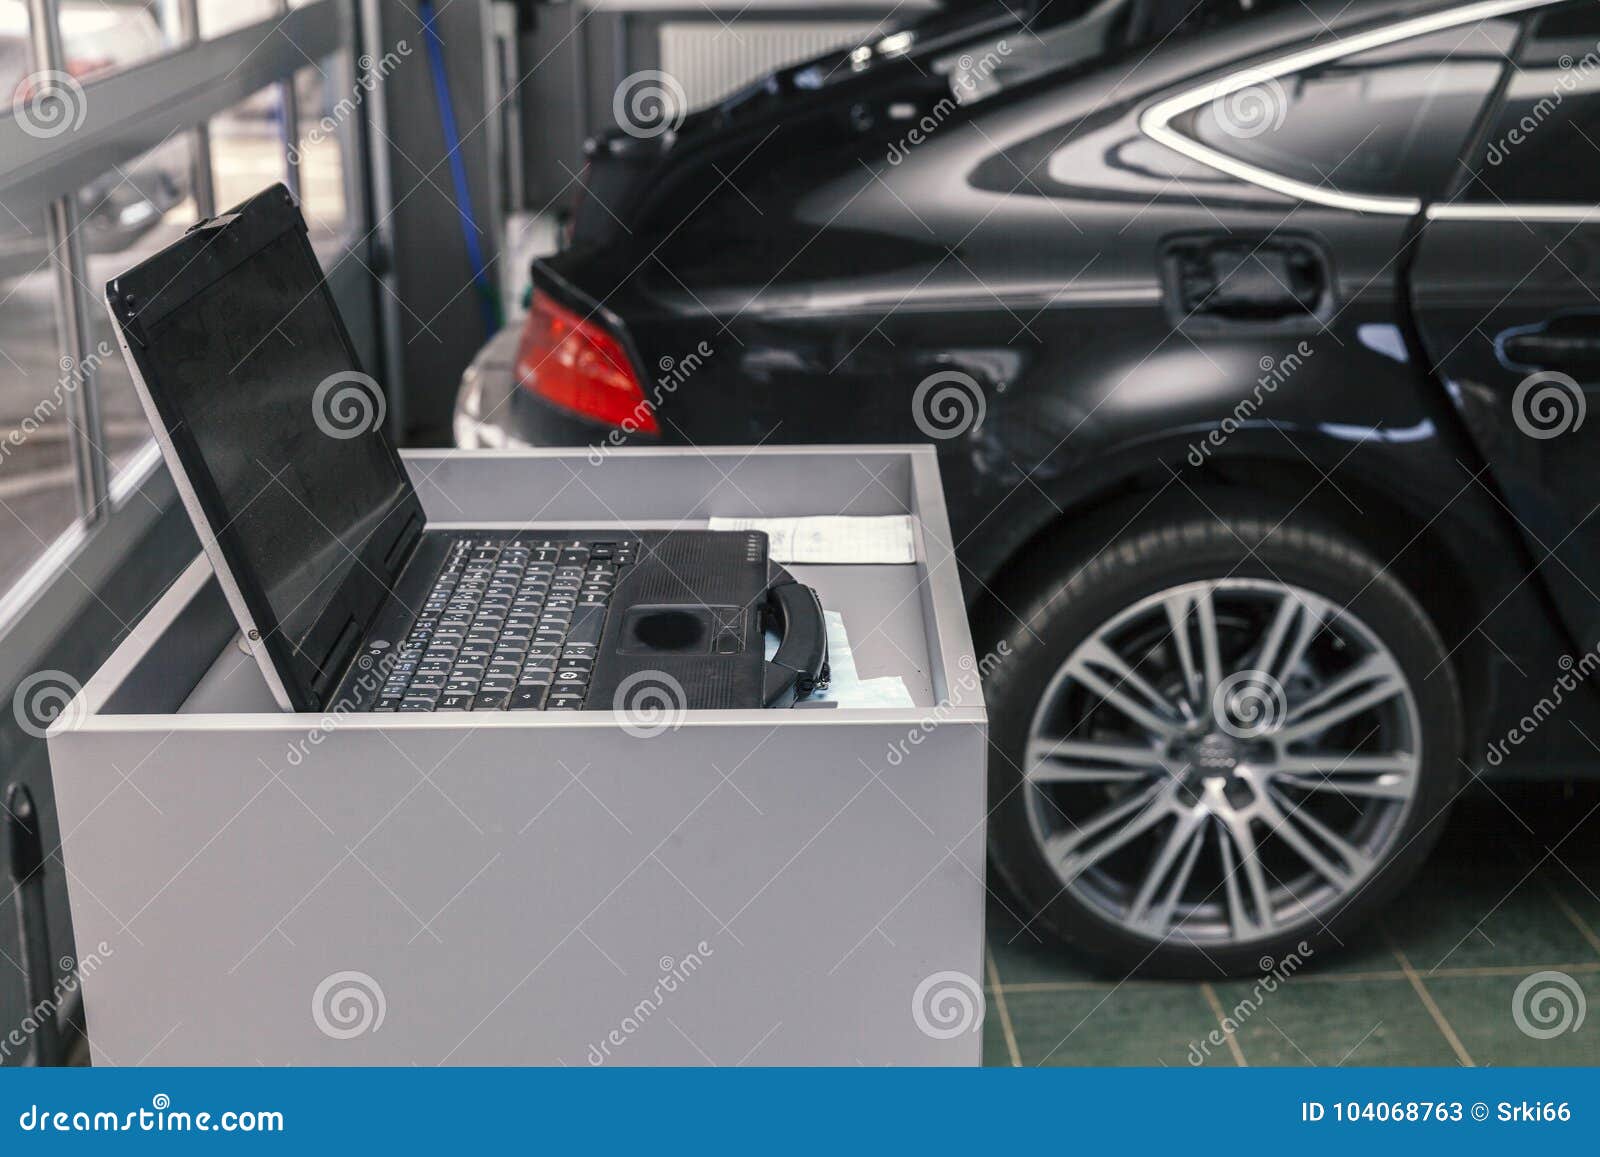 auto car diagnostic computer